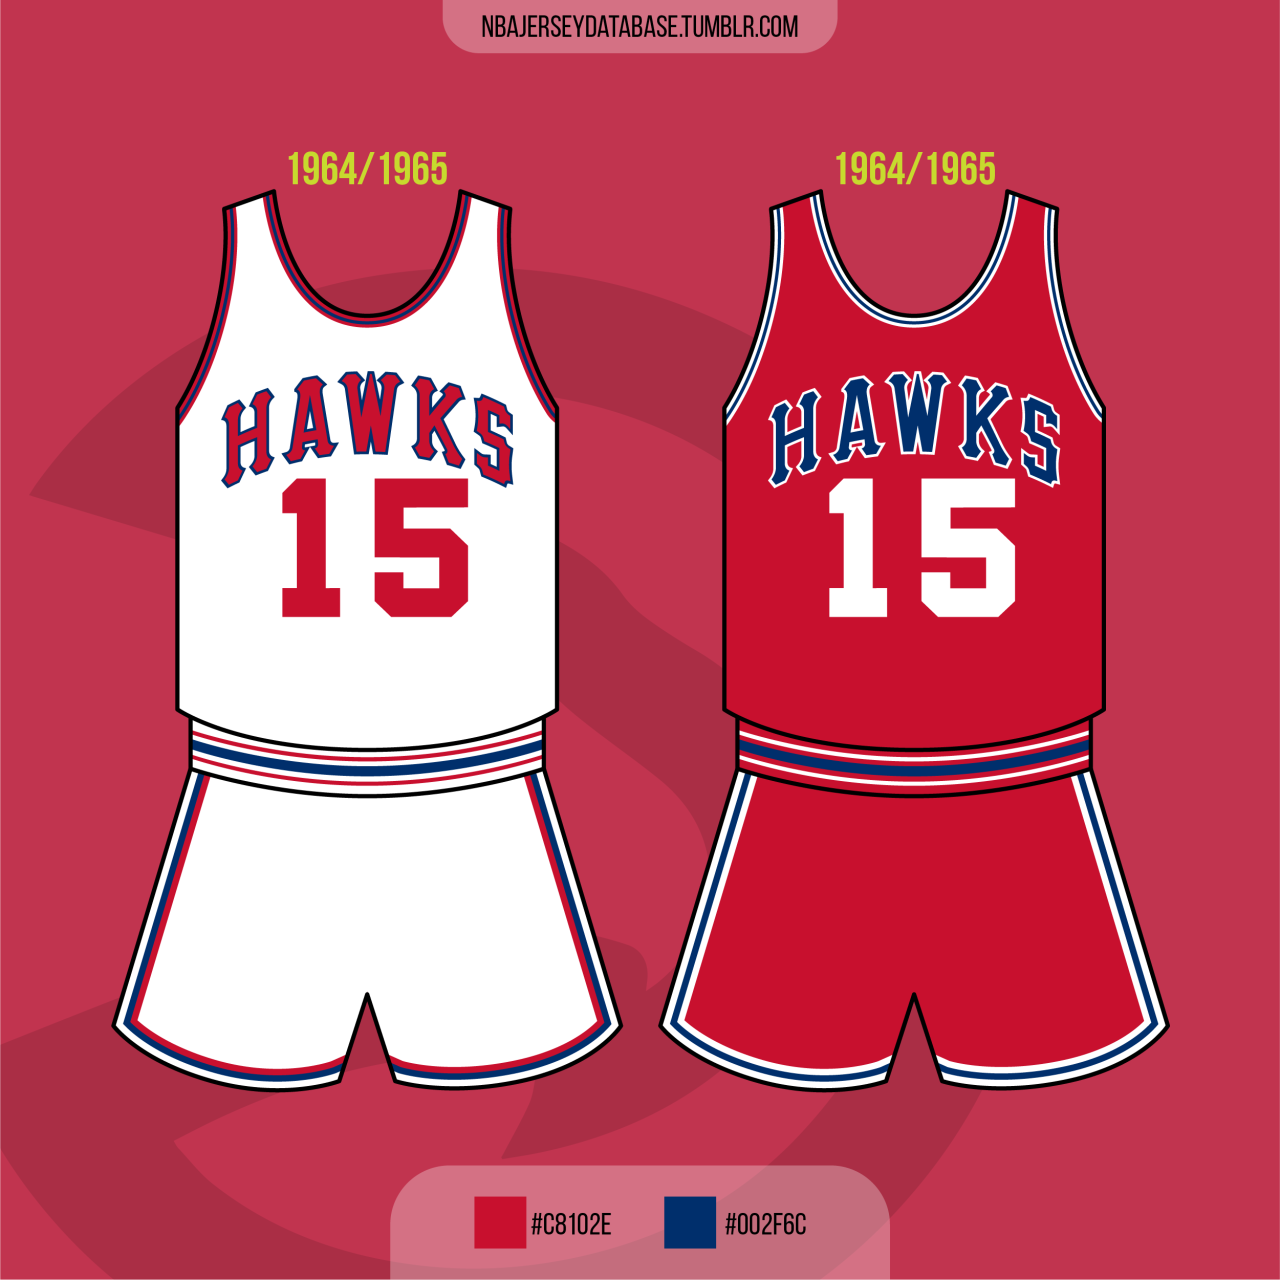 St. Louis Hawks Team History